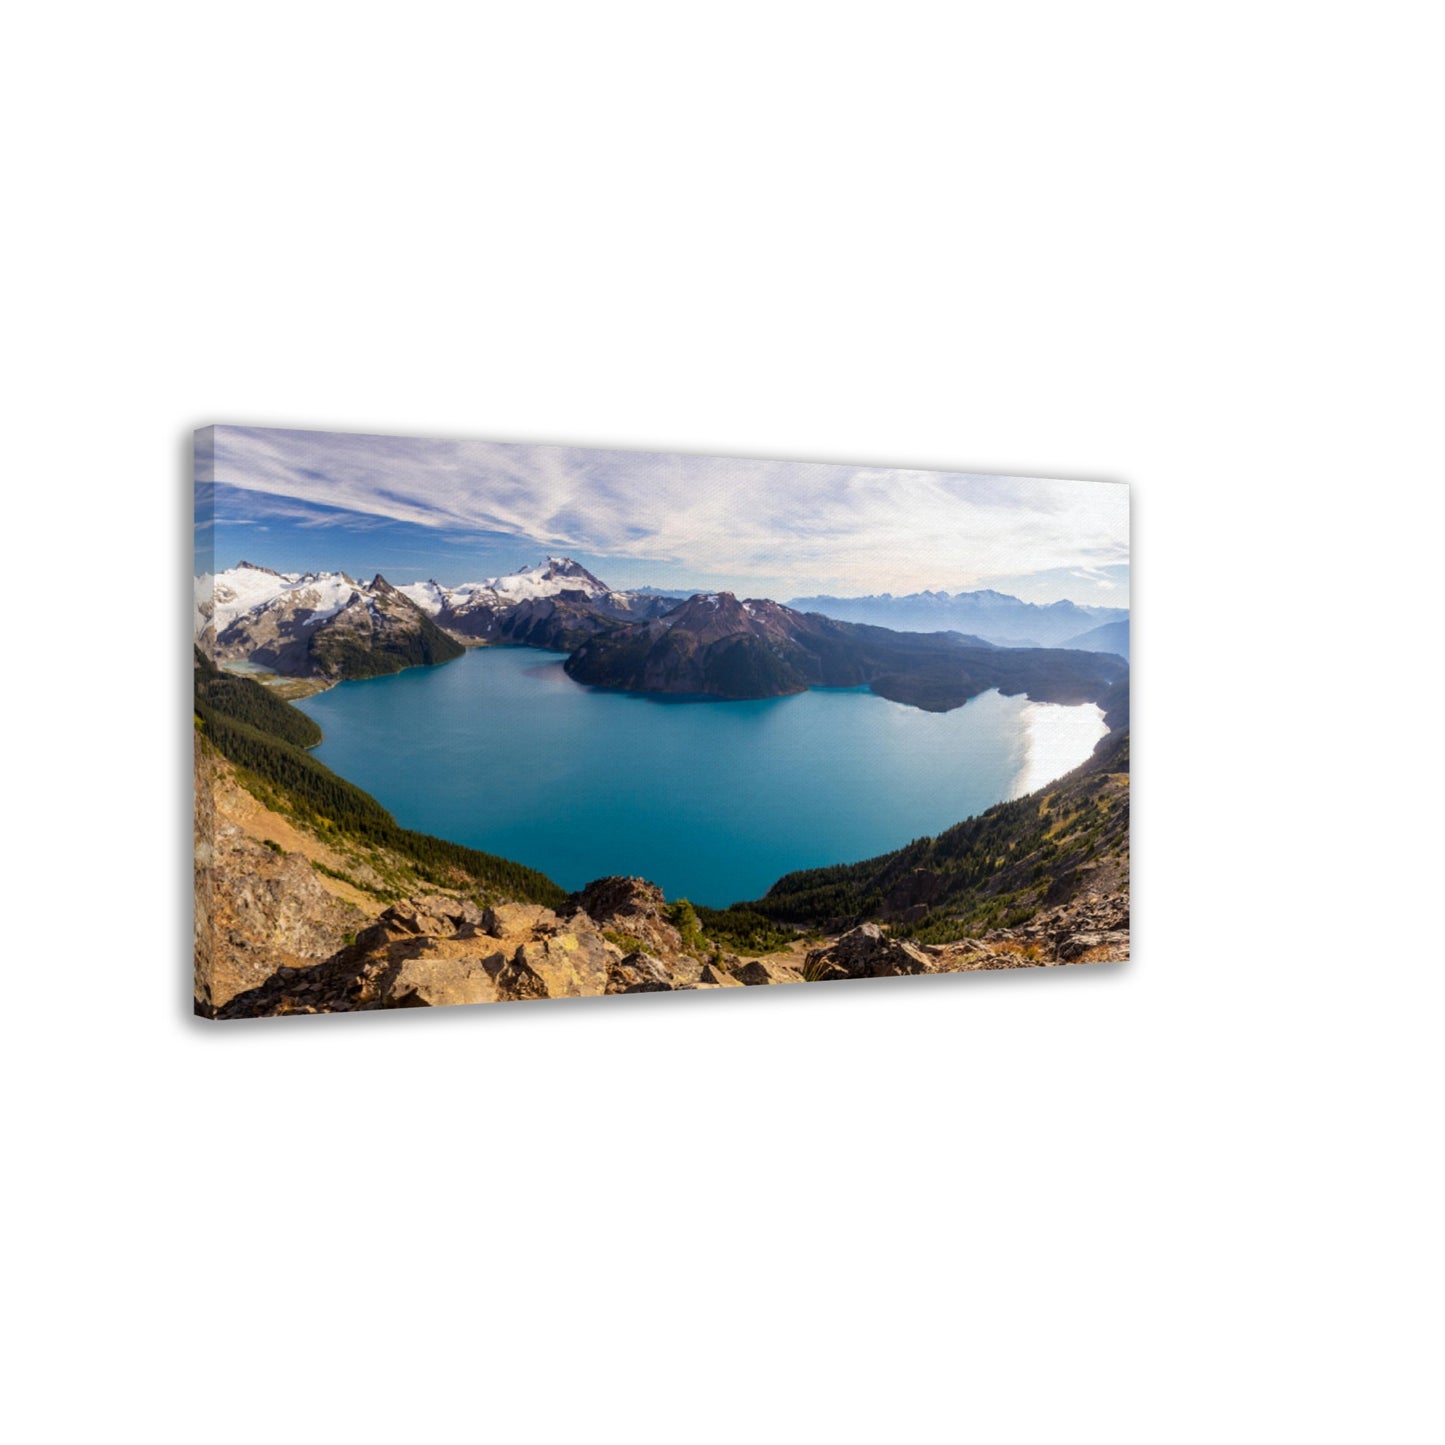 Panoramic View of Garibaldi Lake from Panorama Ridge - Canvas Print - British Columbia, Canada